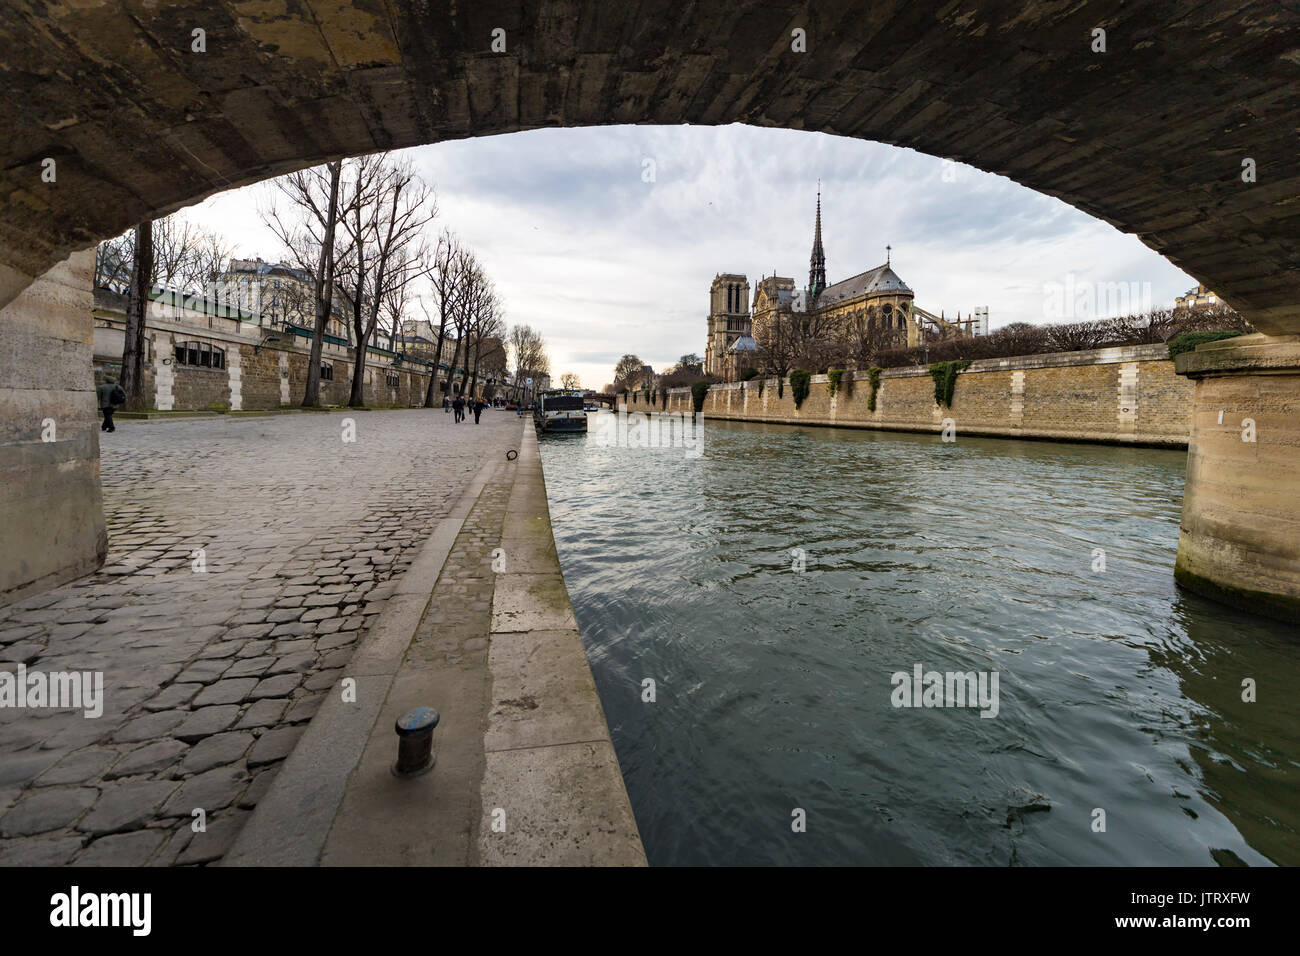 Cathédrale notre dame de Paris sous le pont marie pont le long de la rivière Seine Banque D'Images